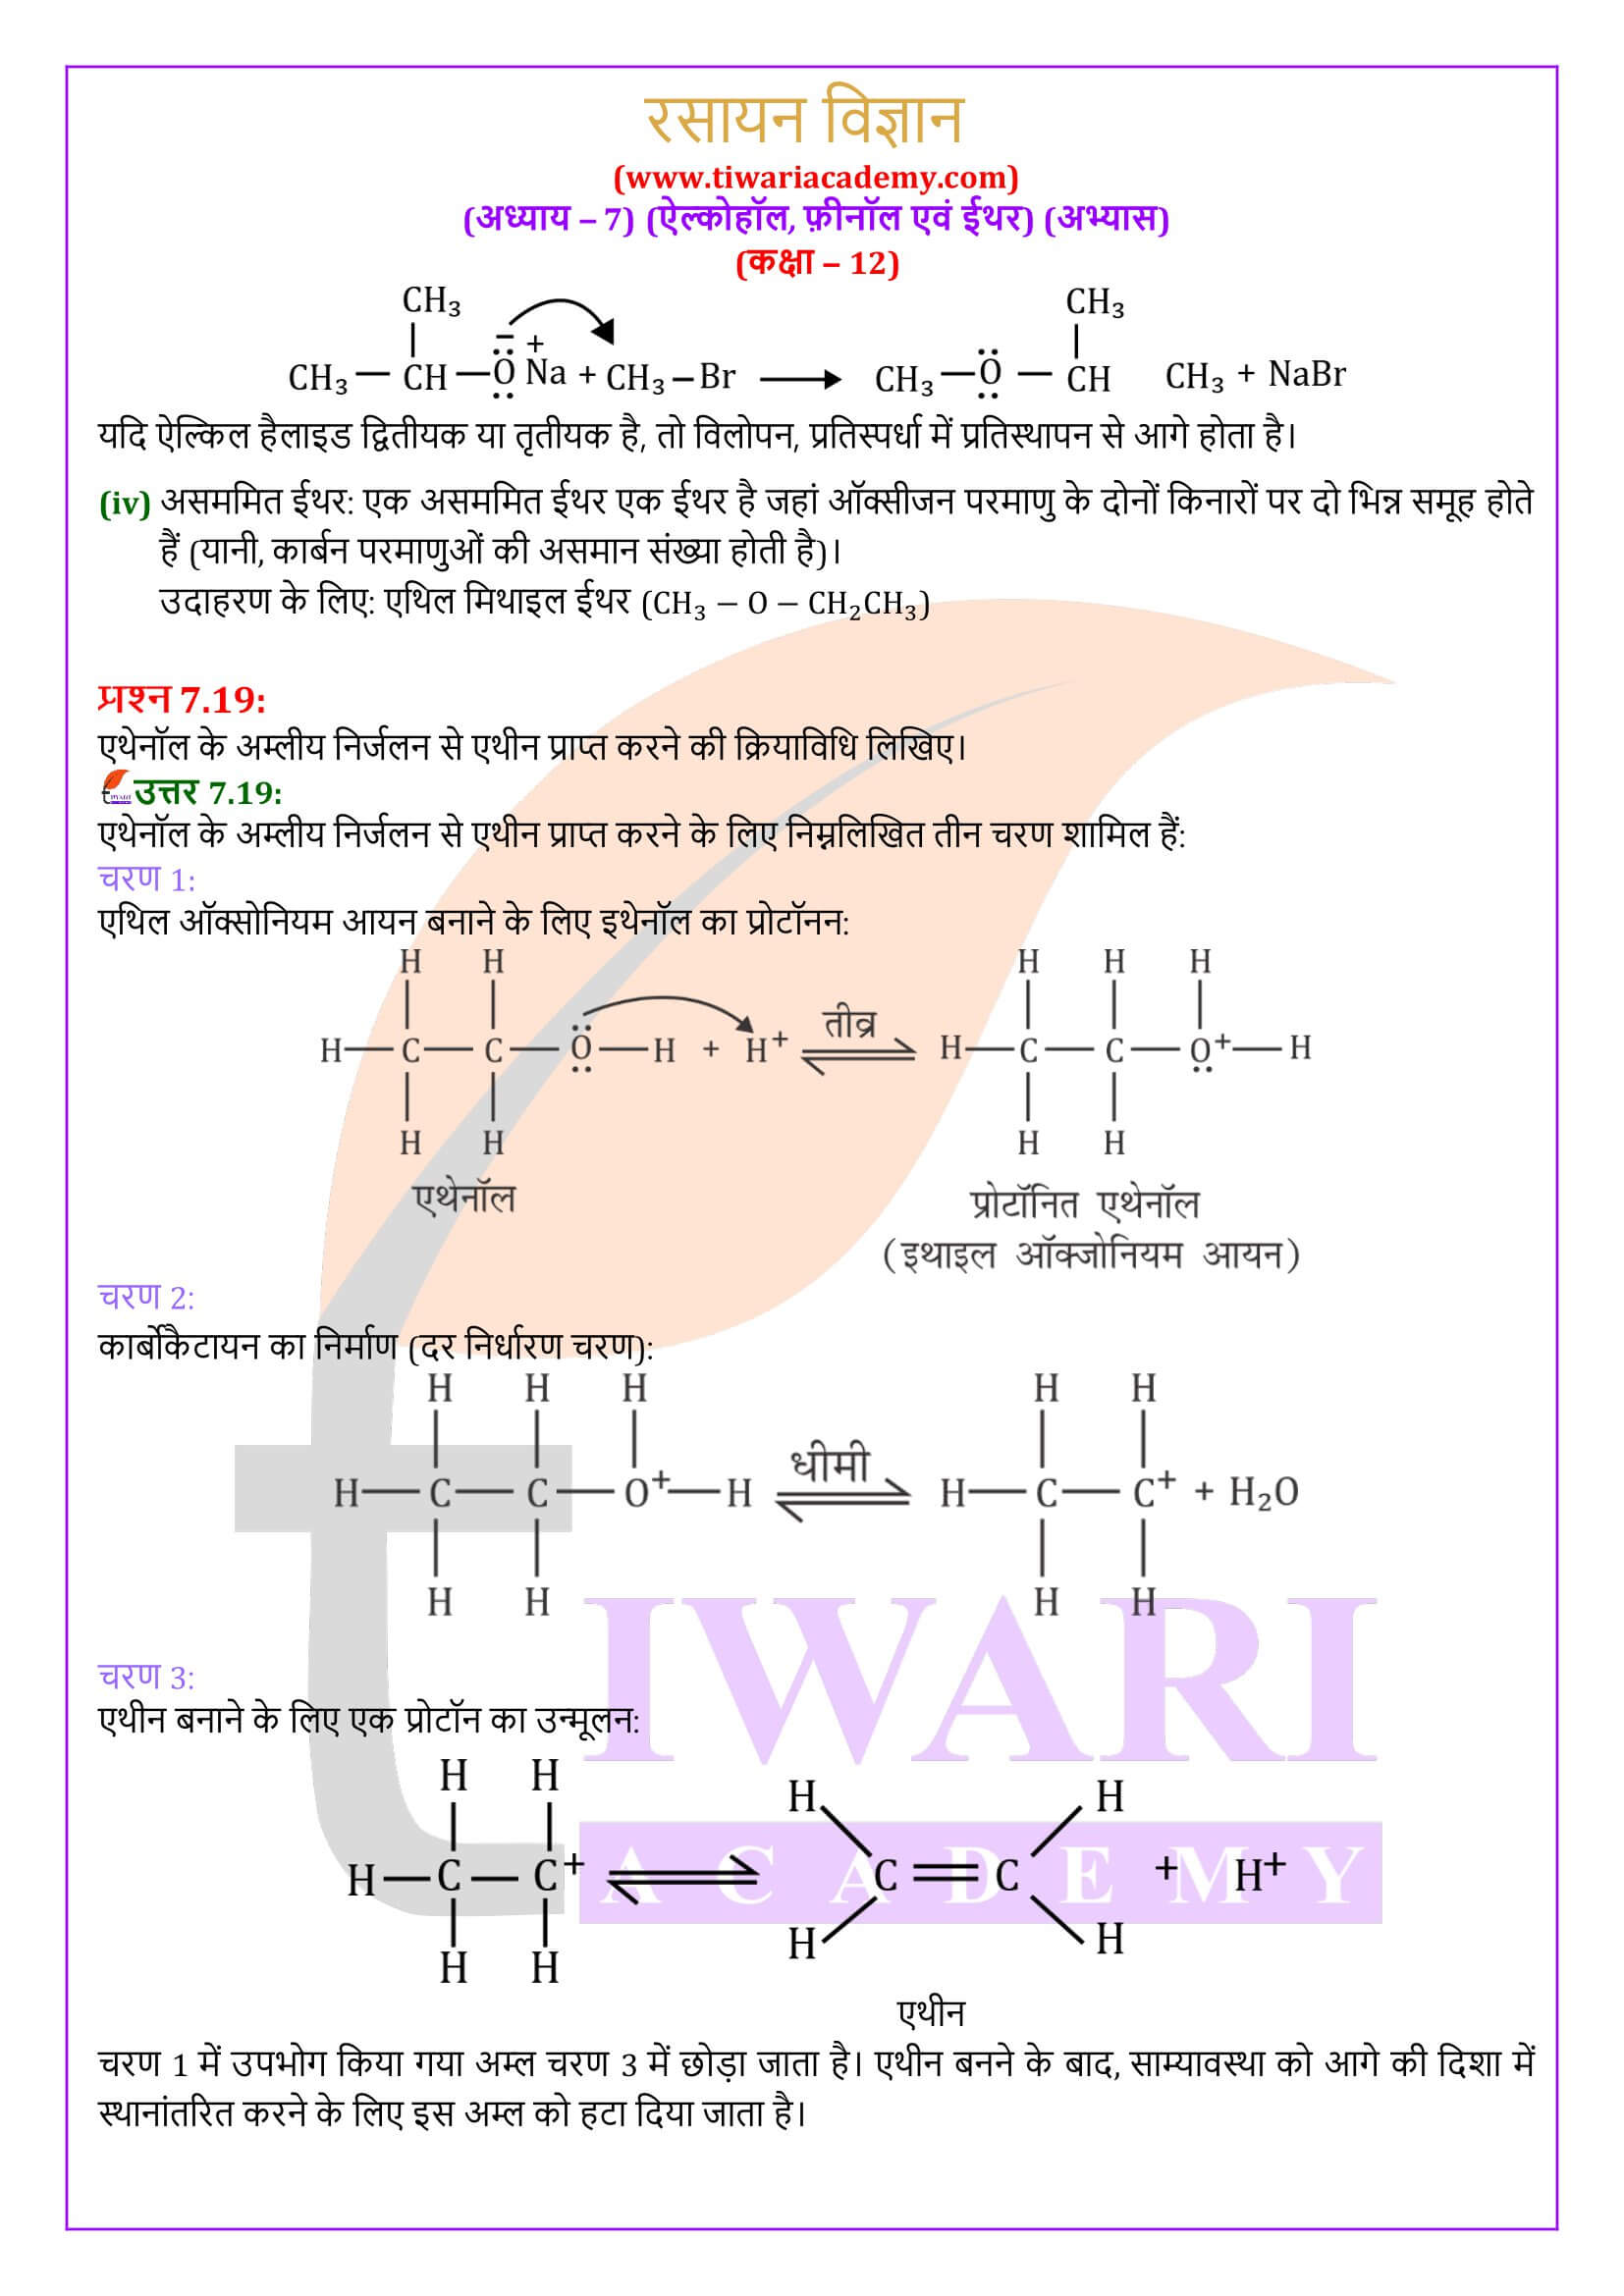 कक्षा 12 रसायन विज्ञान अध्याय 7 हिंदी में उत्तर